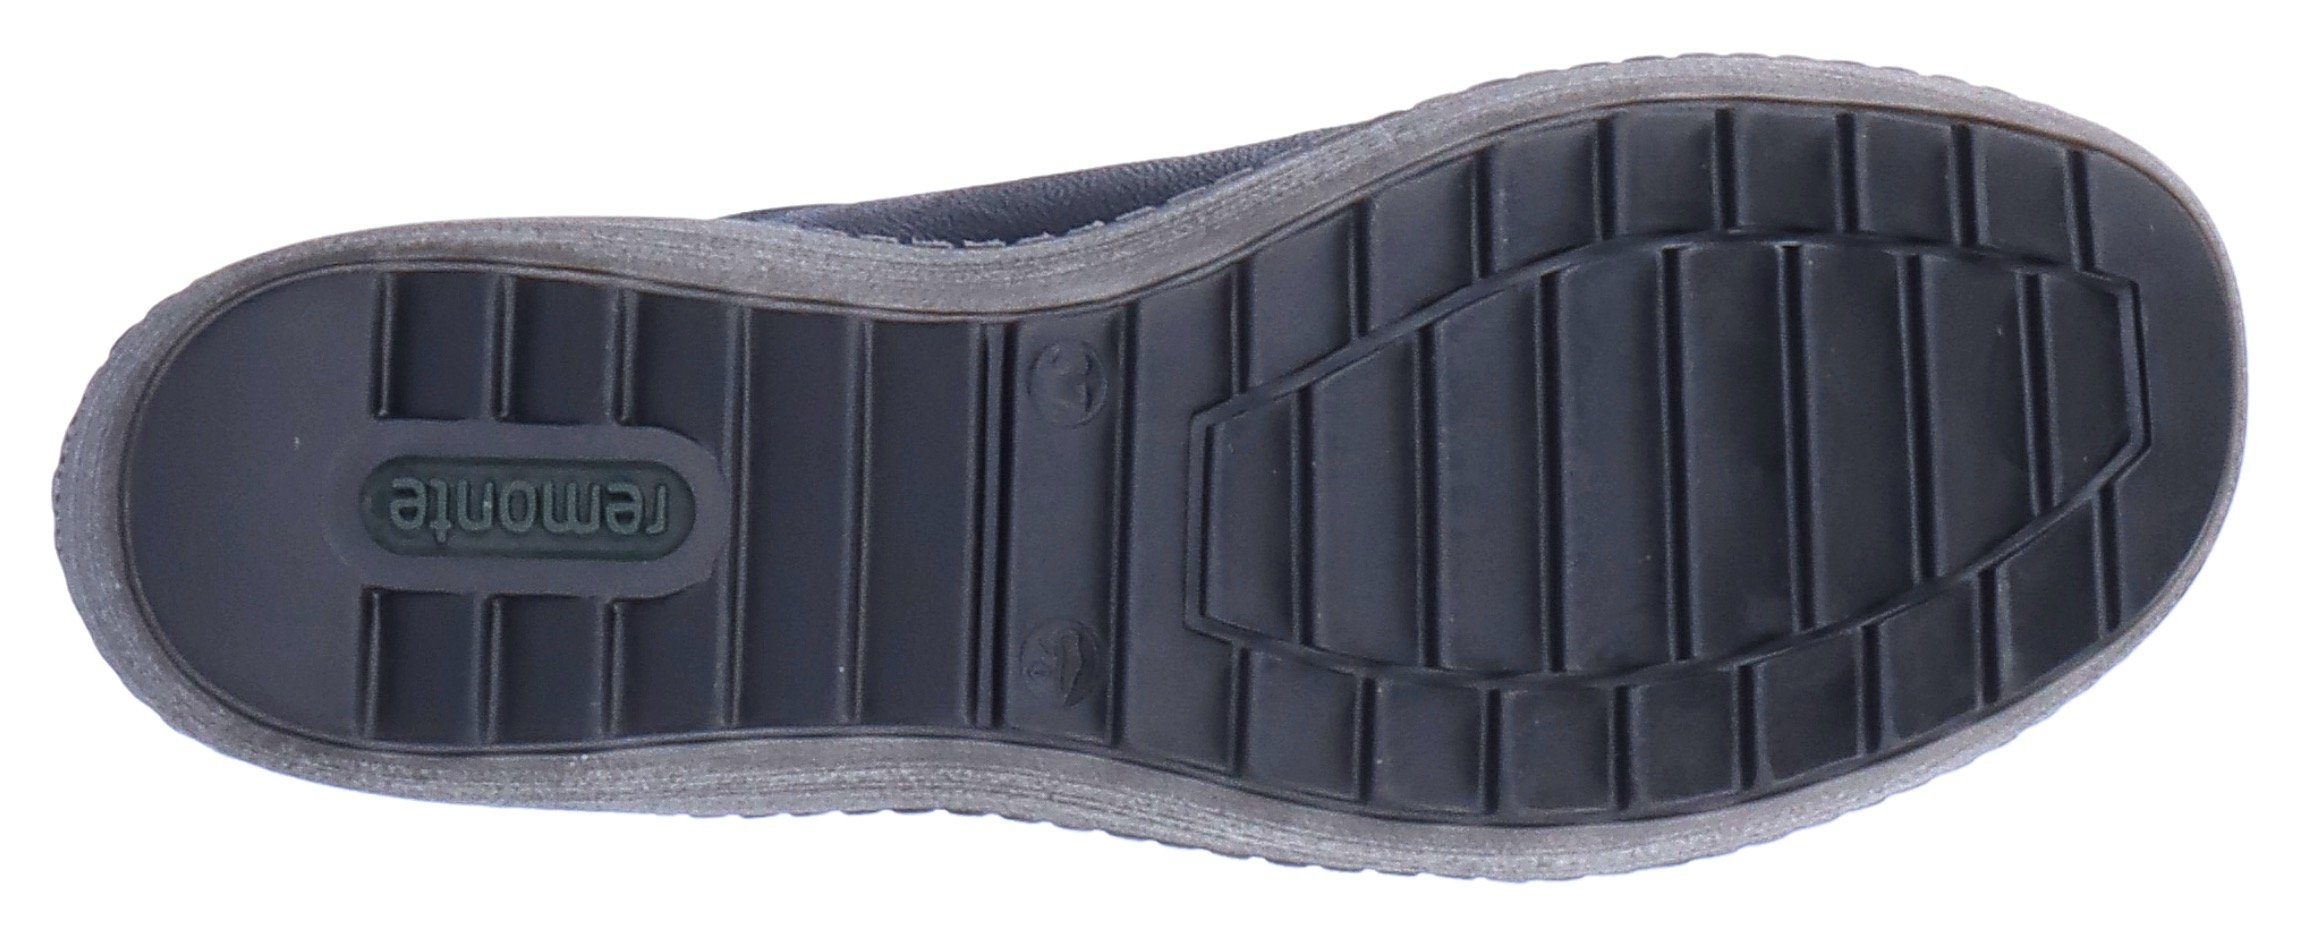 Remonte Schnürschuh mit Tex-Ausstattung schwarz-silberfarben